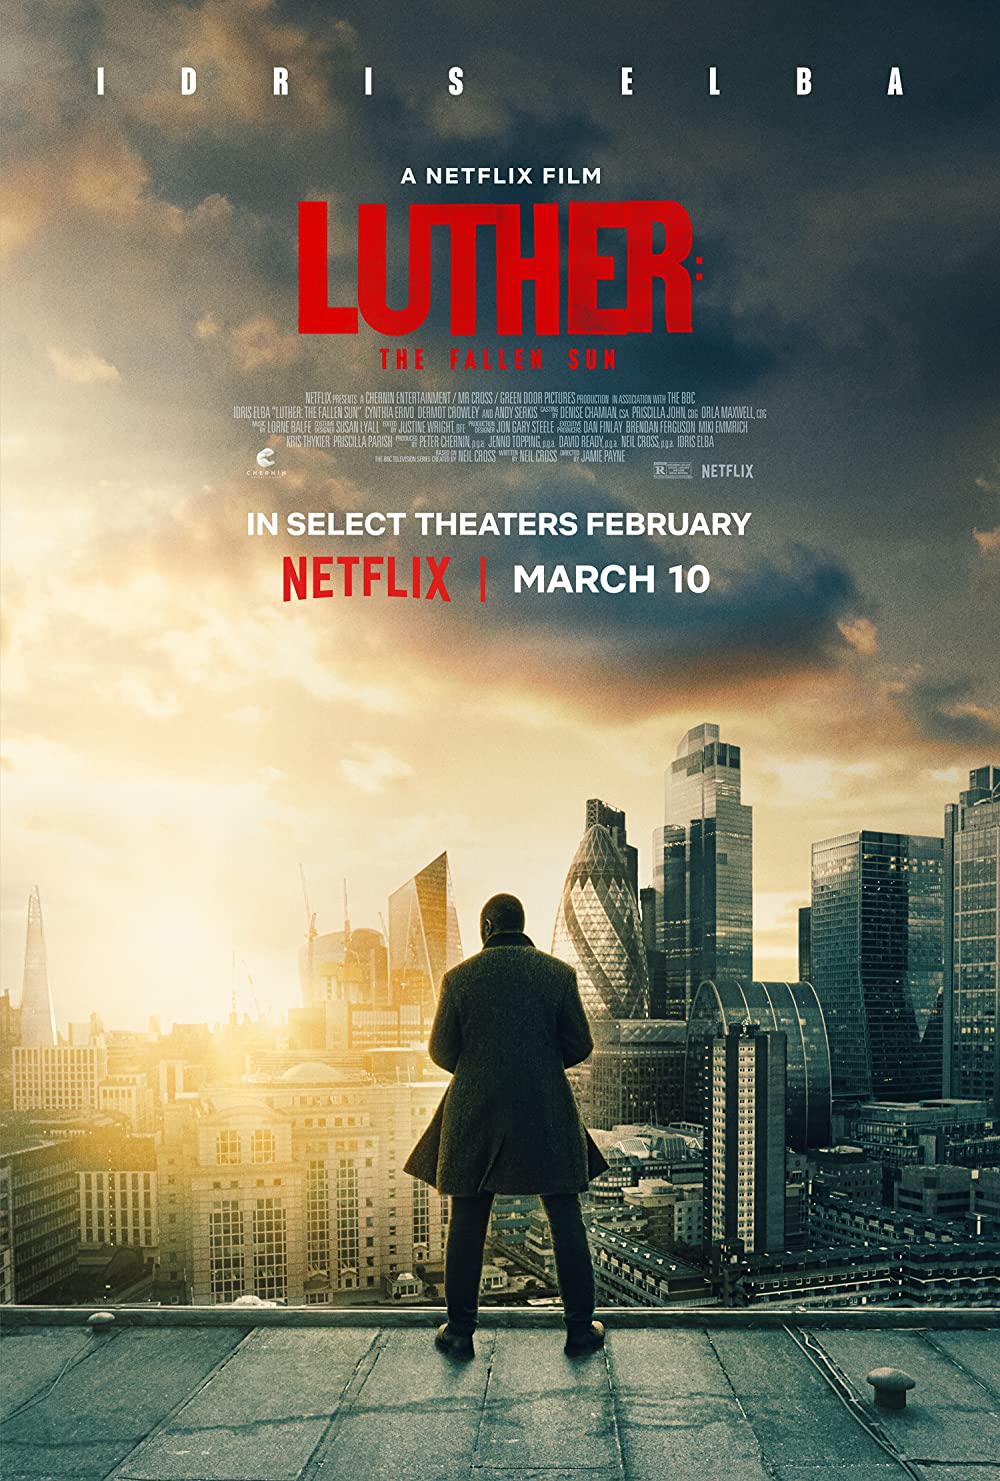 ดูหนังออนไลน์ฟรี ดูหนังออนไลน์ใหม่ NETFLIX Luther: The Fallen Sun 2023 ลูเธอร์: อาทิตย์ตกดิน movie678